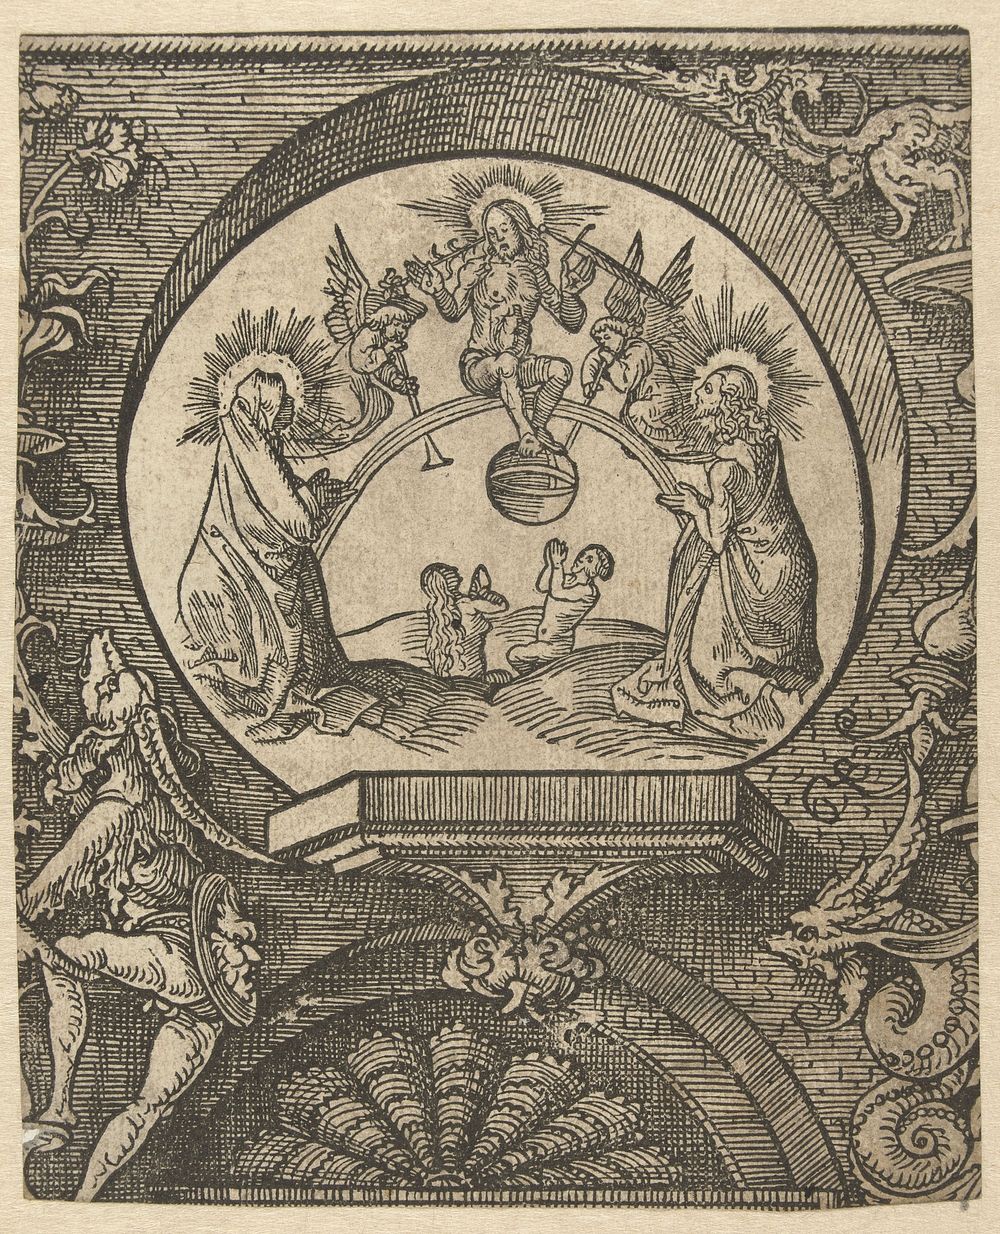 Het Laatste Oordeel (1520) by Jacob Cornelisz van Oostsanen and Doen Pietersz